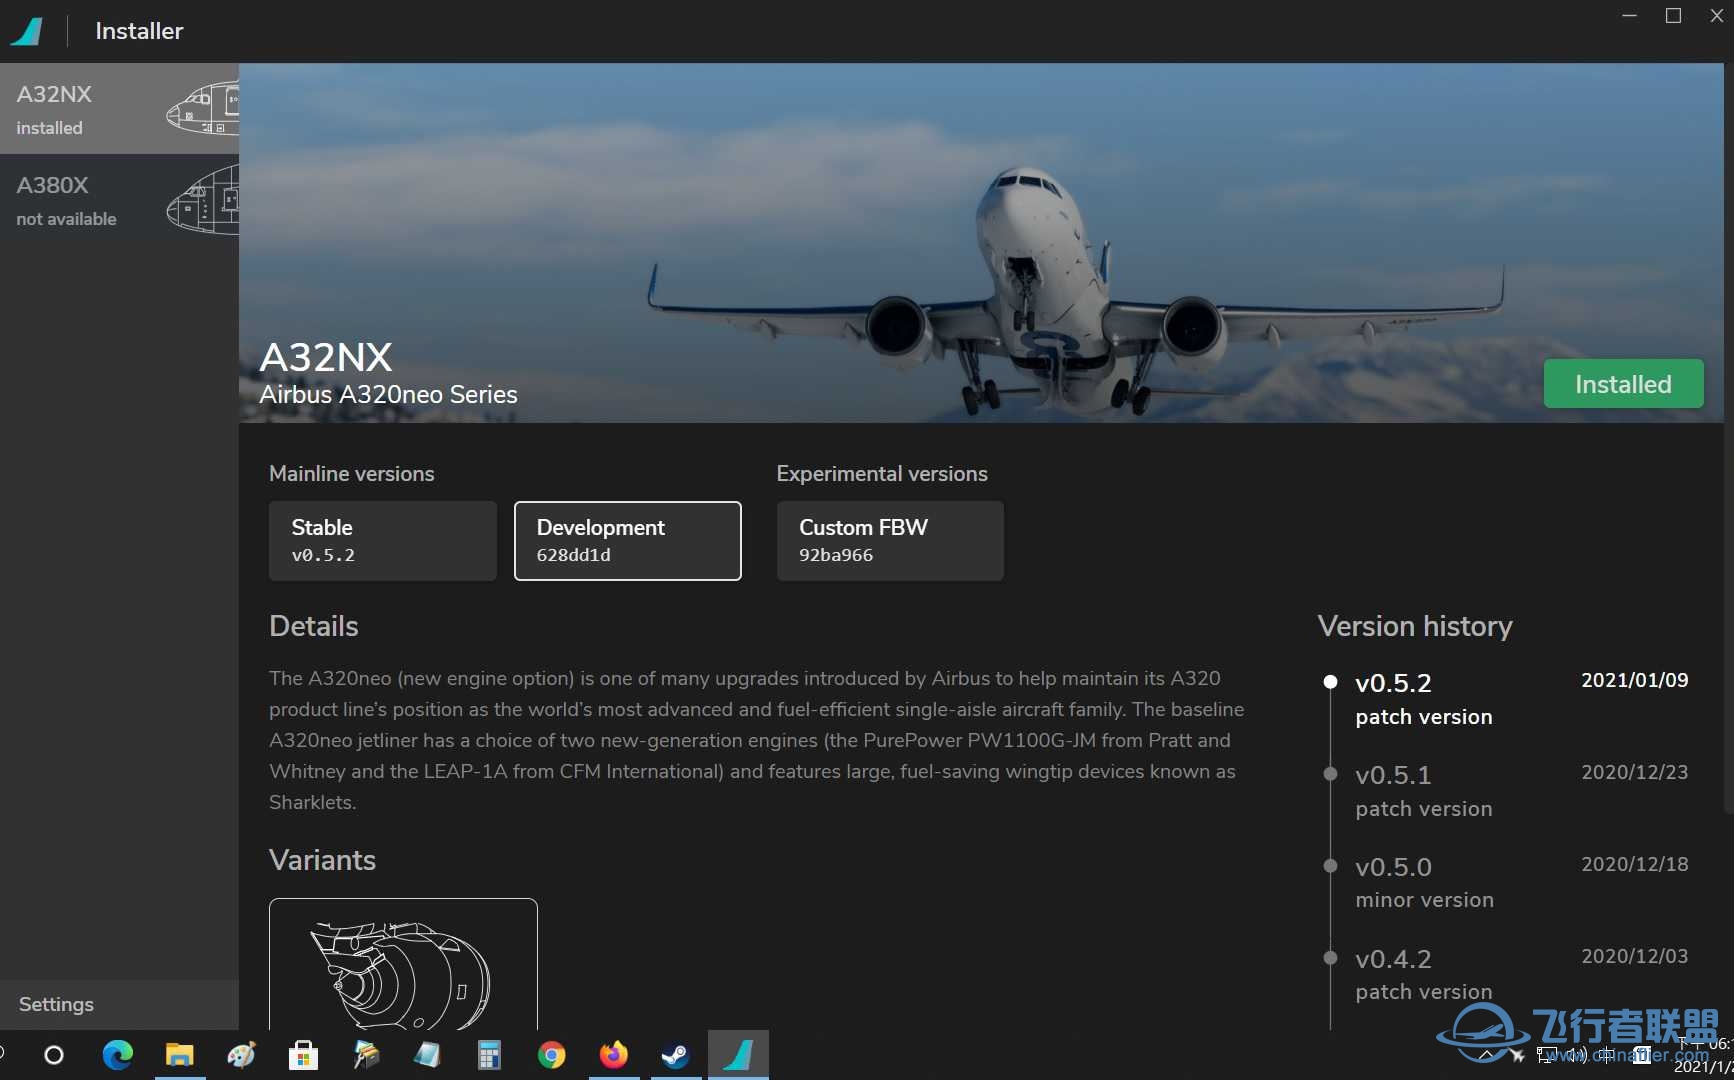 下載安'裝最新的開發版A320NX-970 